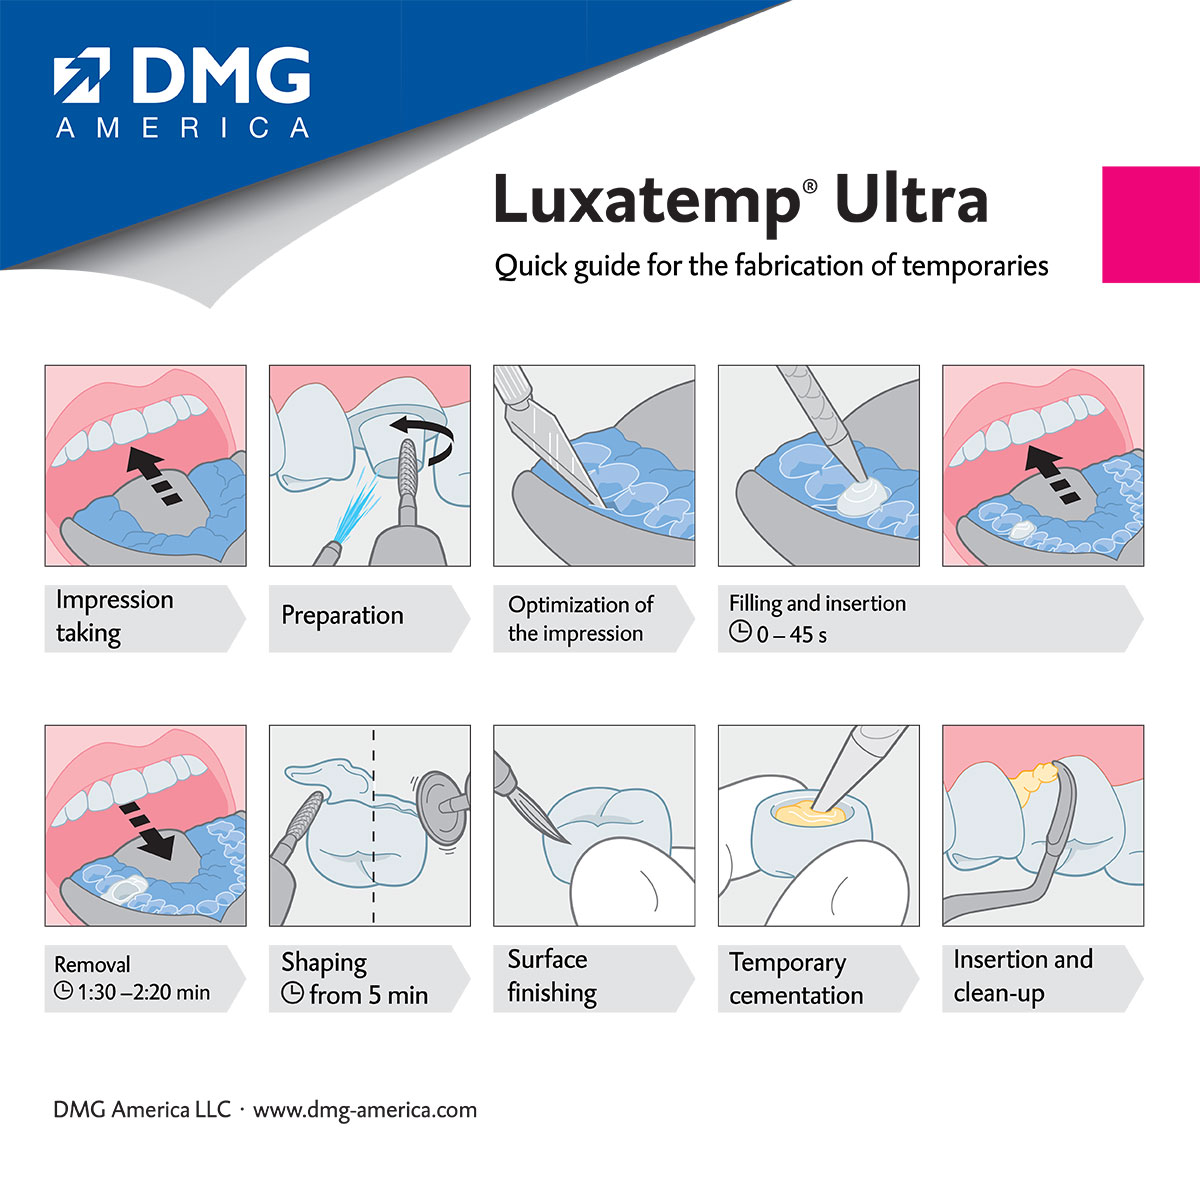 Quick Guide - Luxatemp Ultra